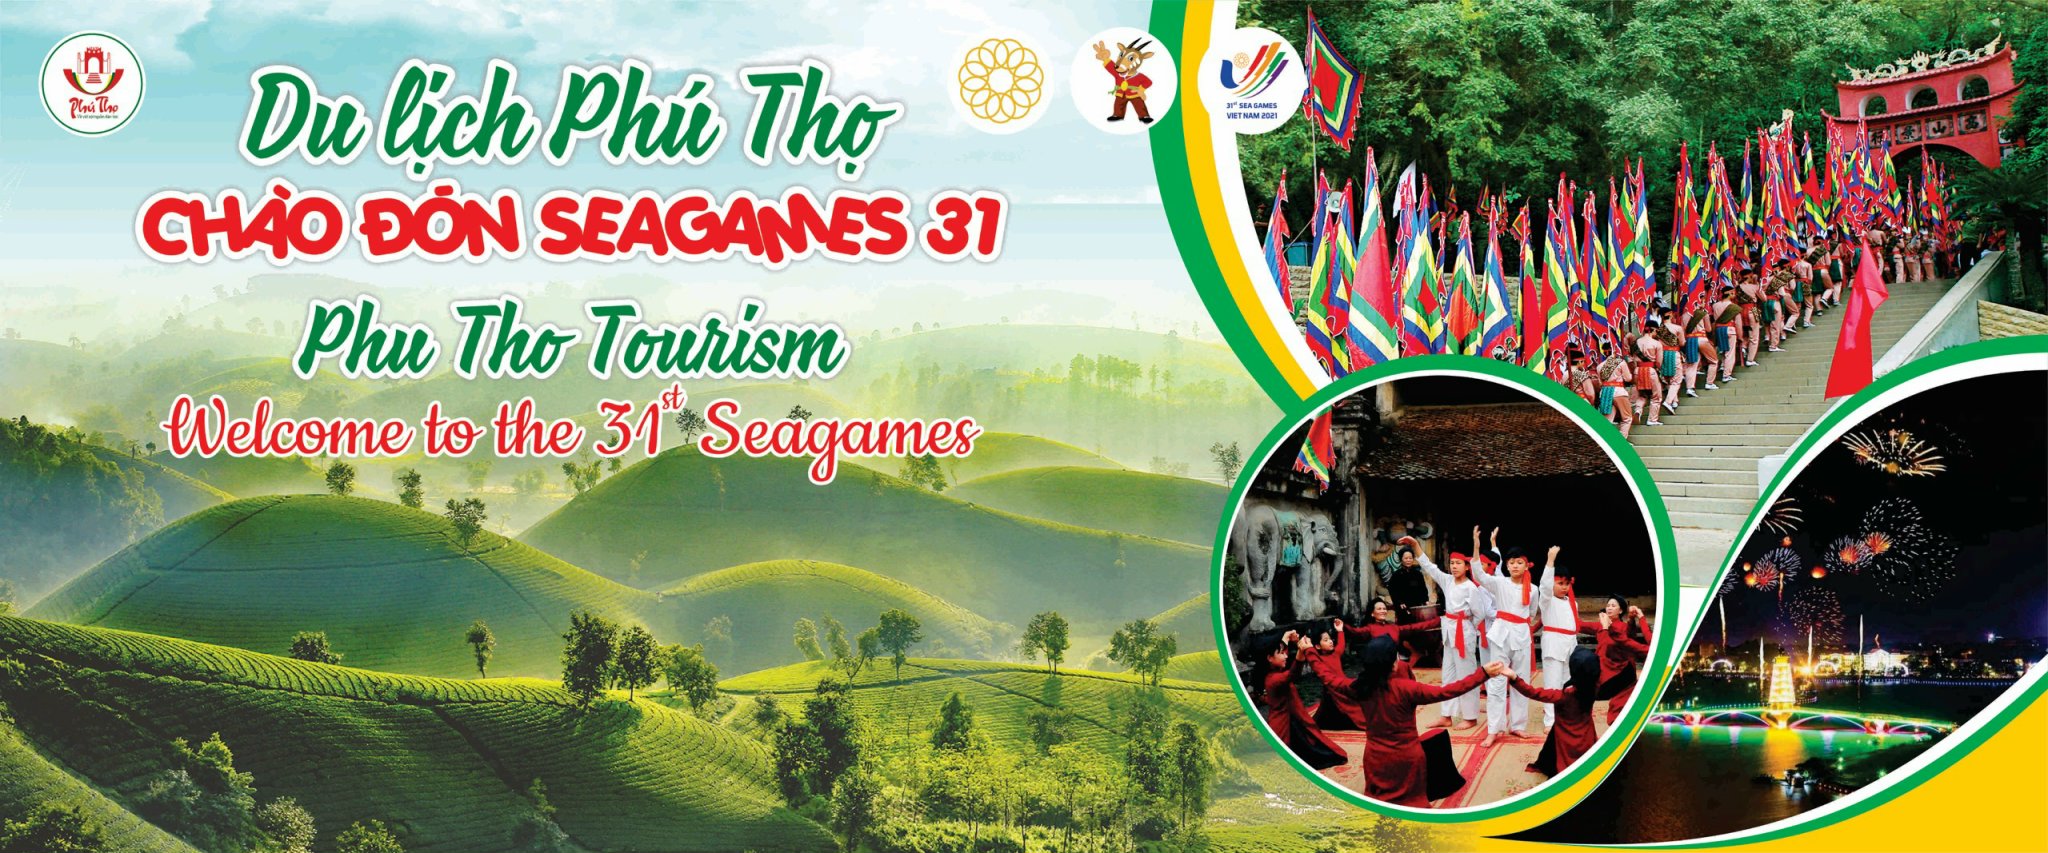 Công bố Tour du lịch Phú Thọ chào đón SeaGames 31